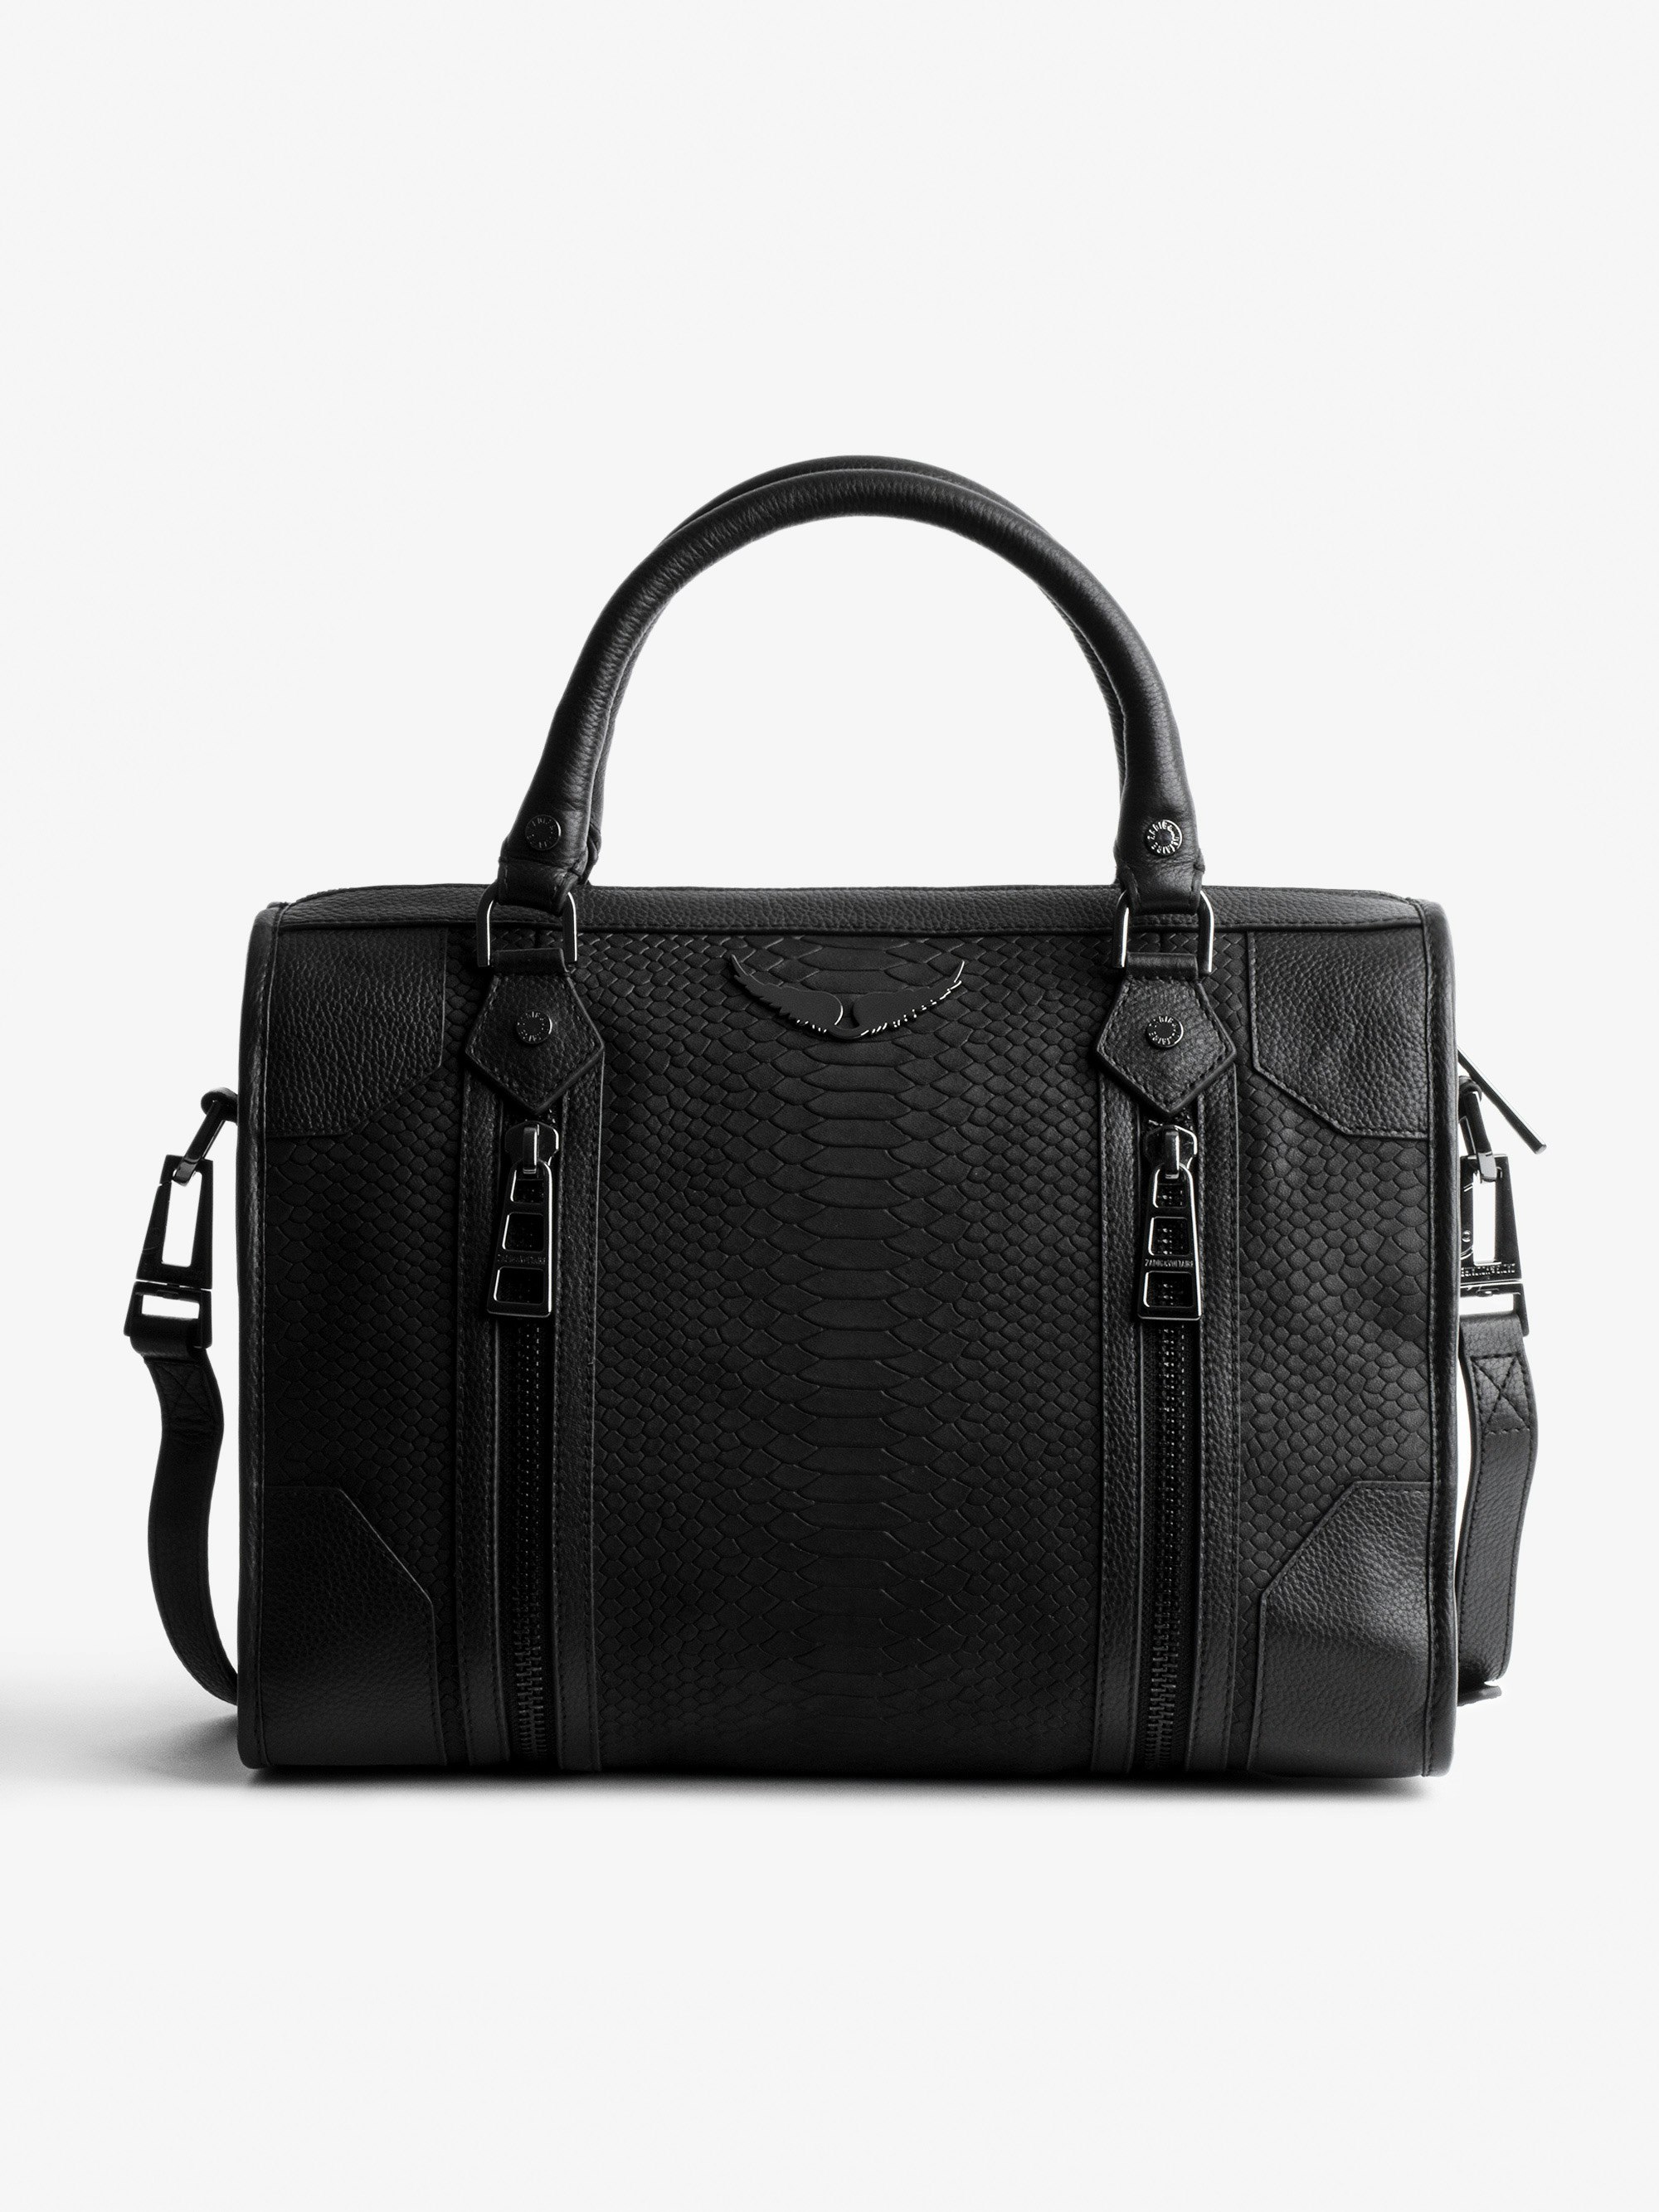 Tasche Sunny Medium #2 Soft Savage - Damen-Handtasche aus schwarzem Leder in Python-Optik.